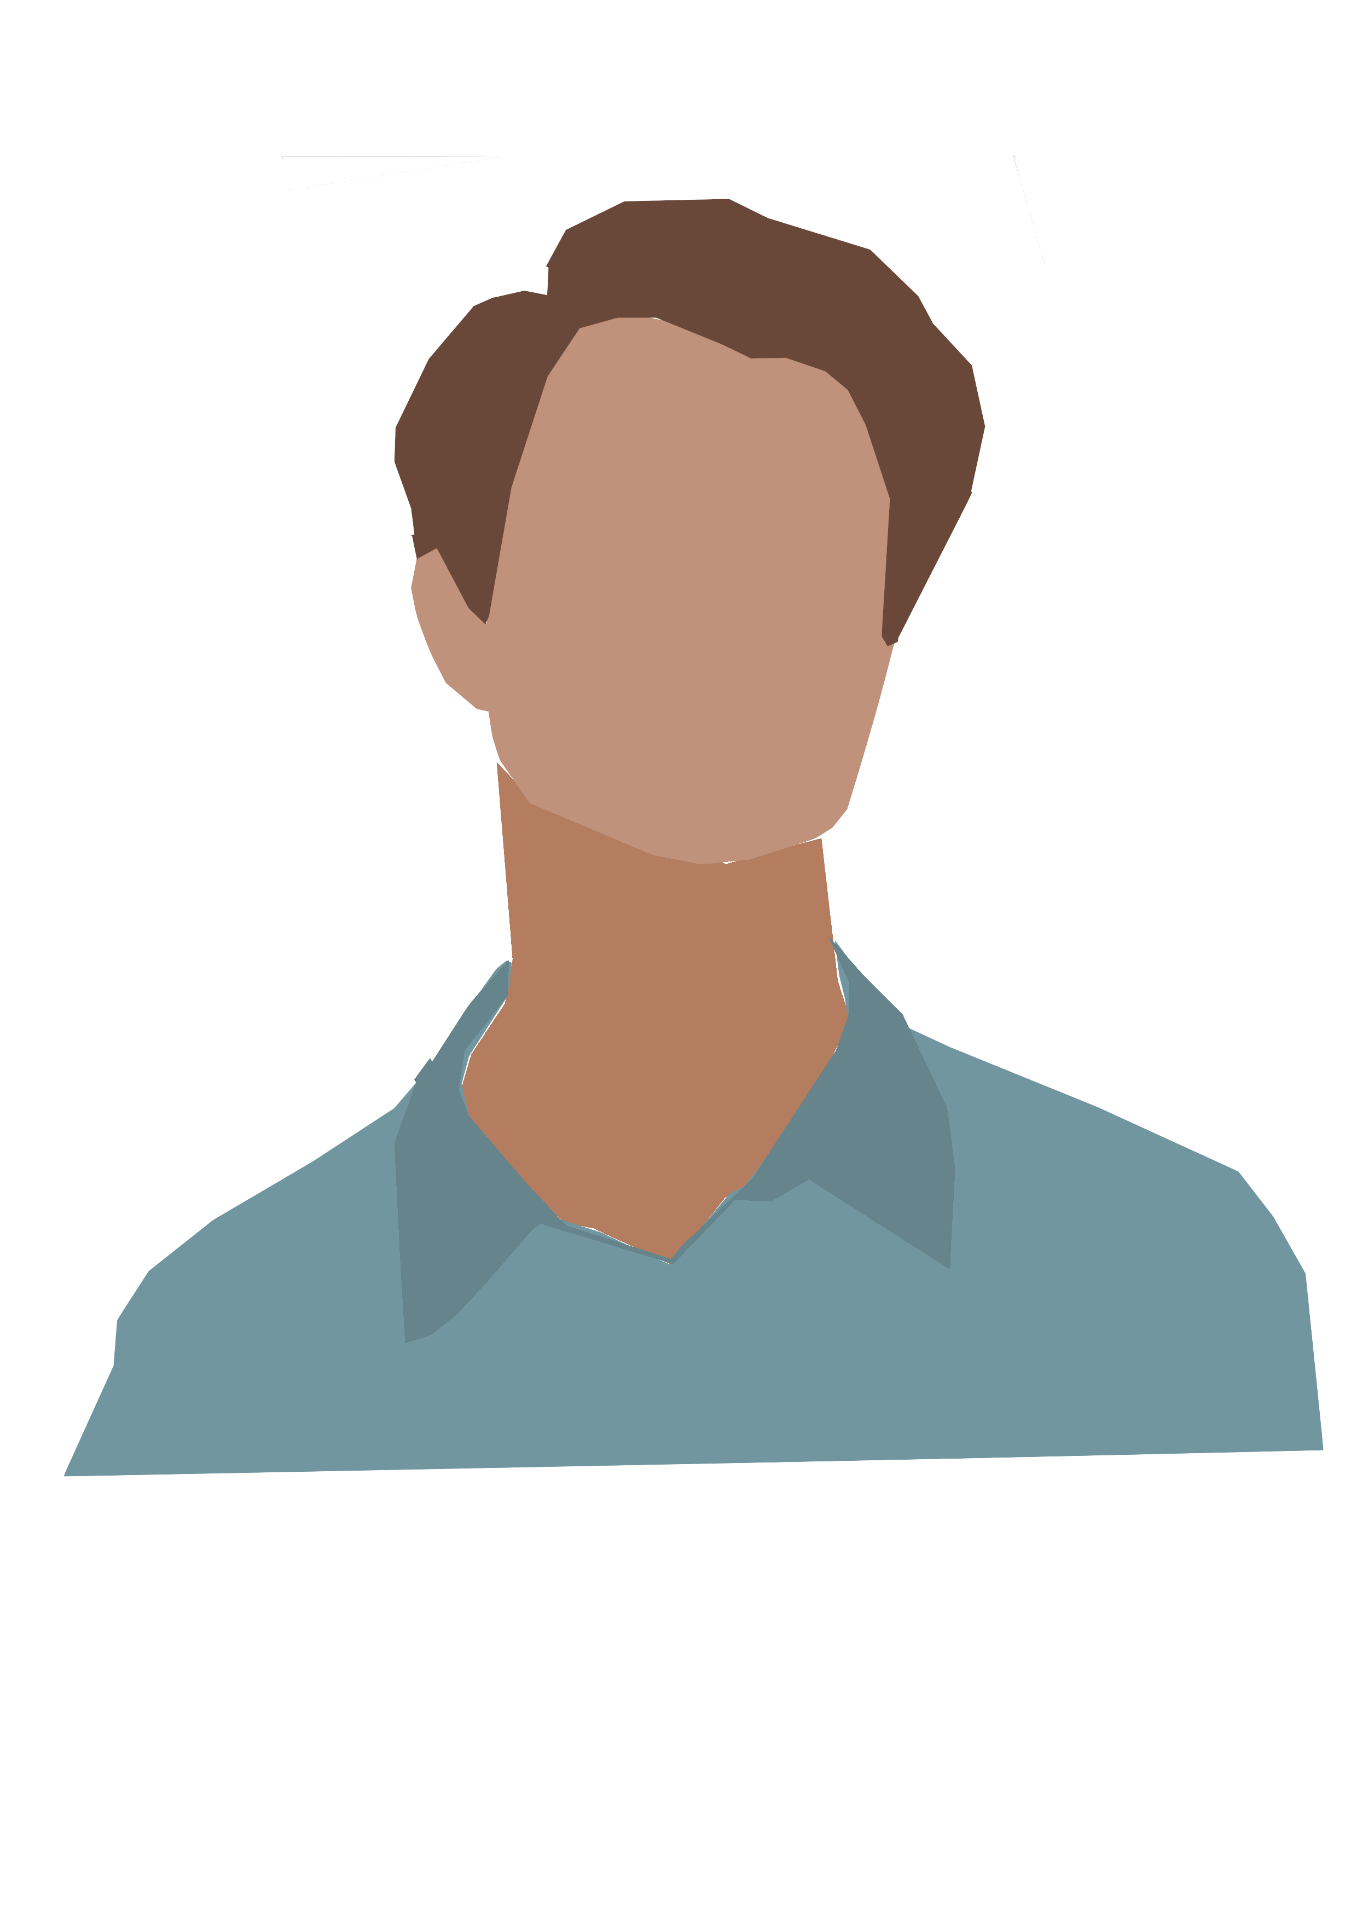 Milo's CAS Journey